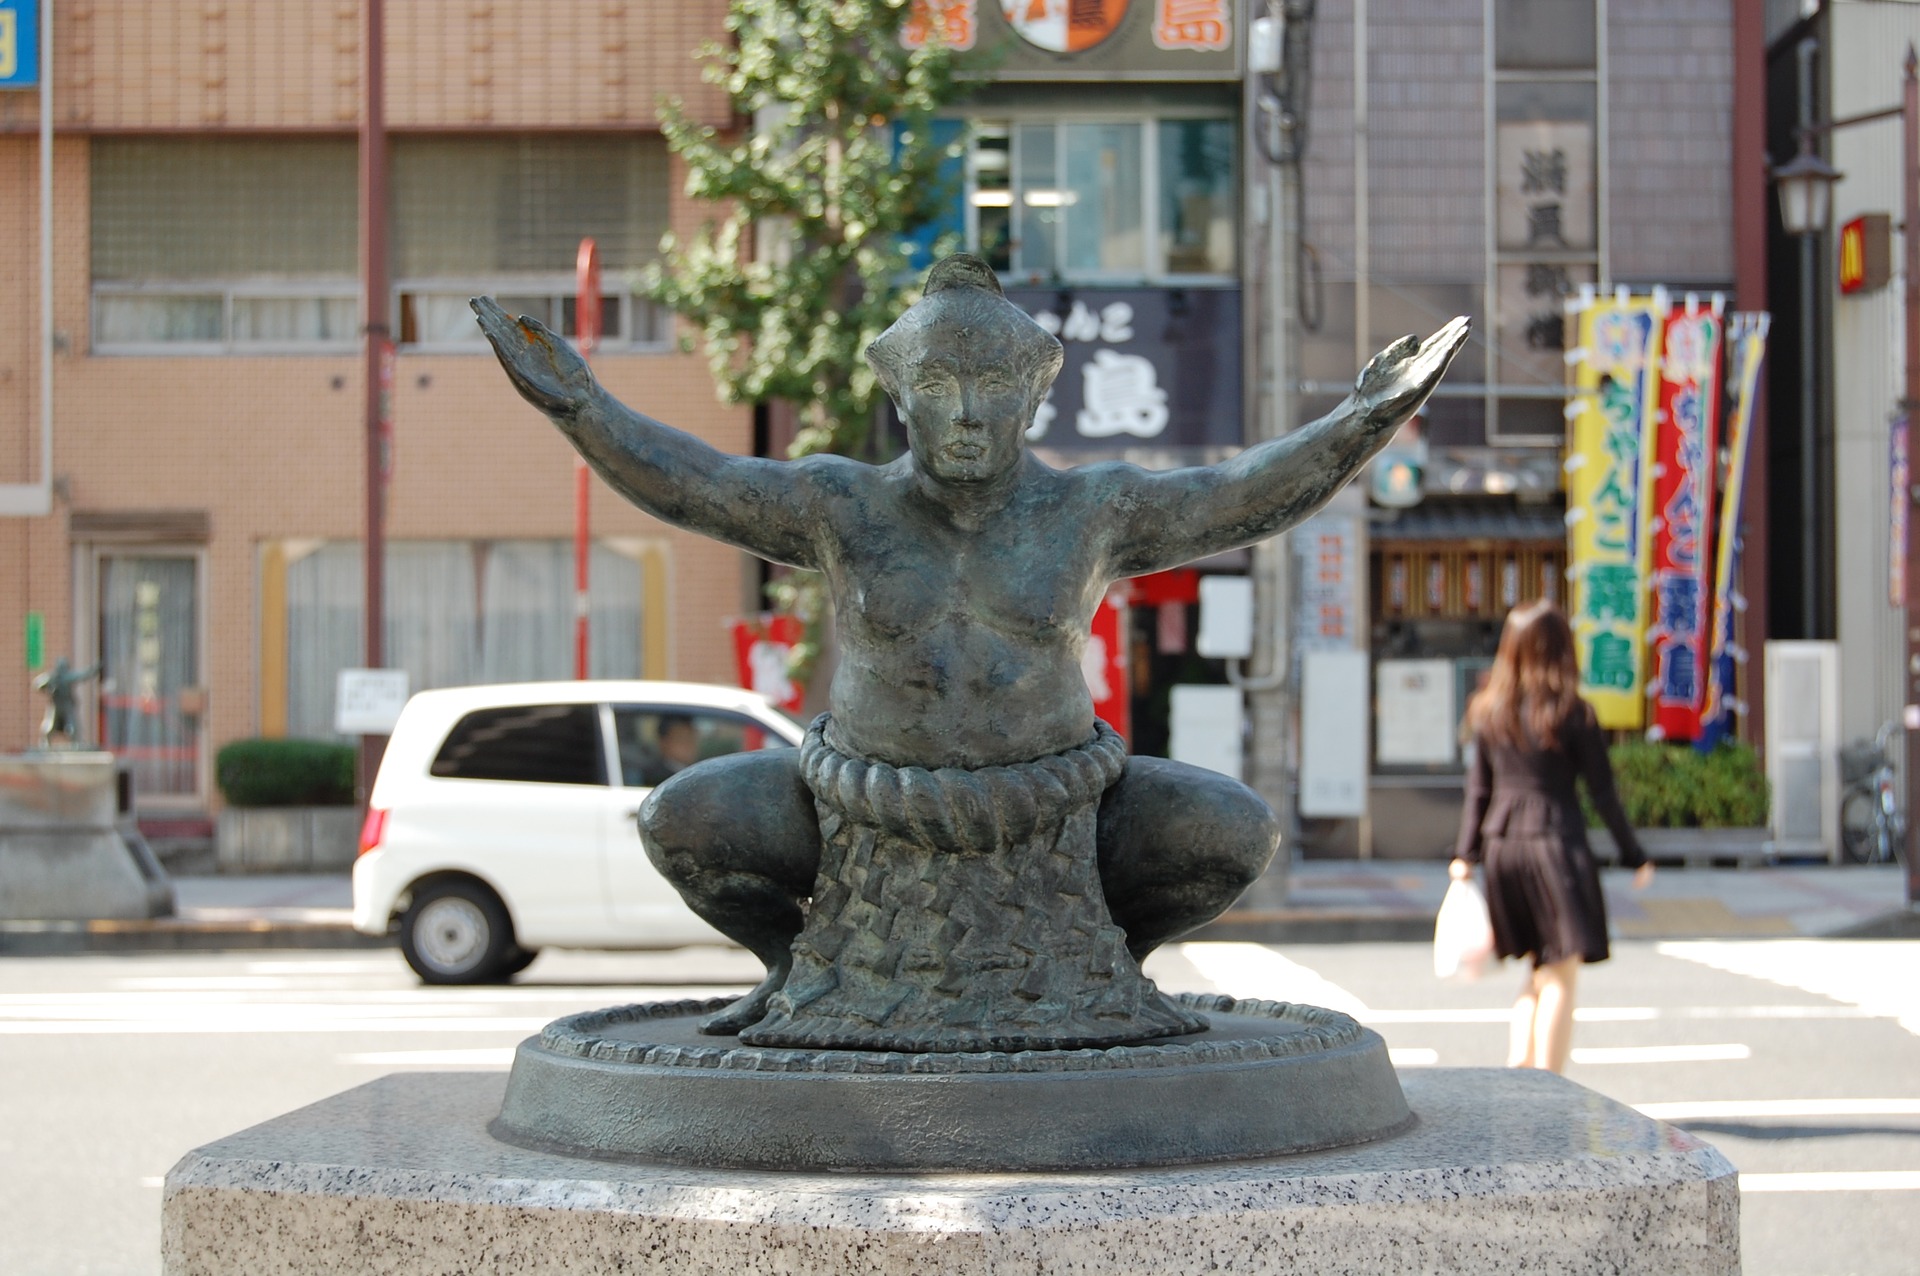 Ryogoku Sumo statue